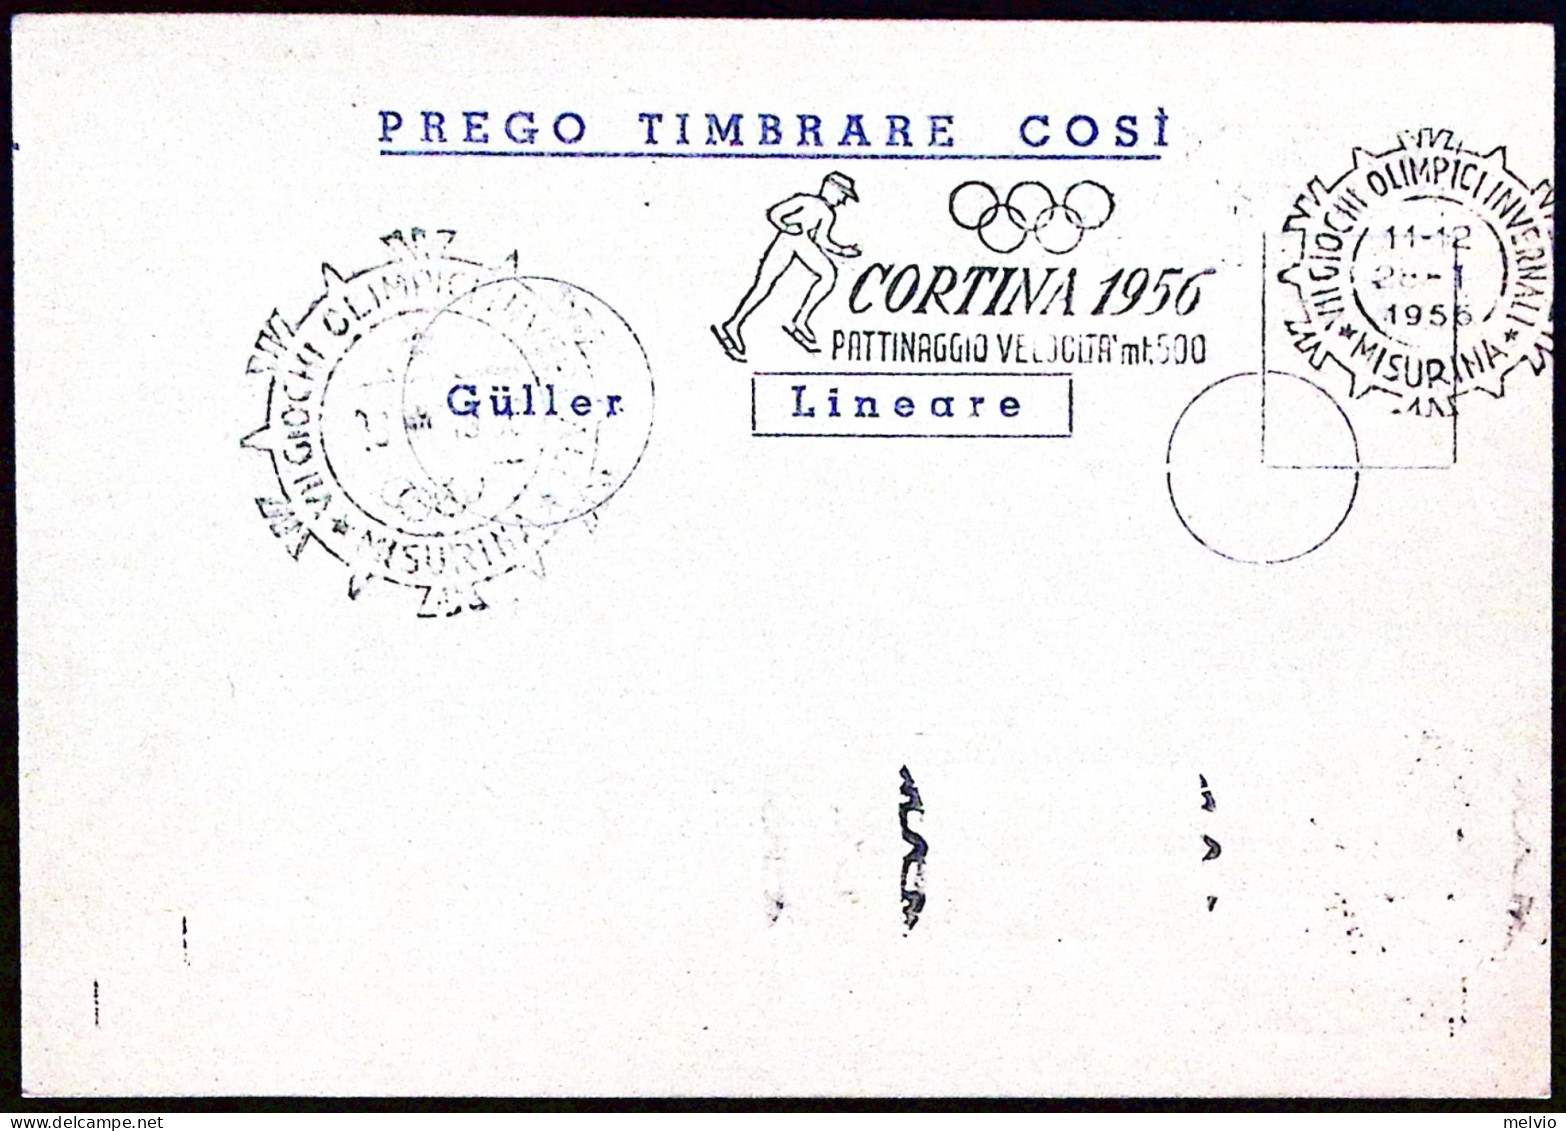 1956-MISURINA PATTINAGGIO VELOCITA' Mt 500 Annullo Targhetta (28.1) Su Cartolina - Manifestaciones